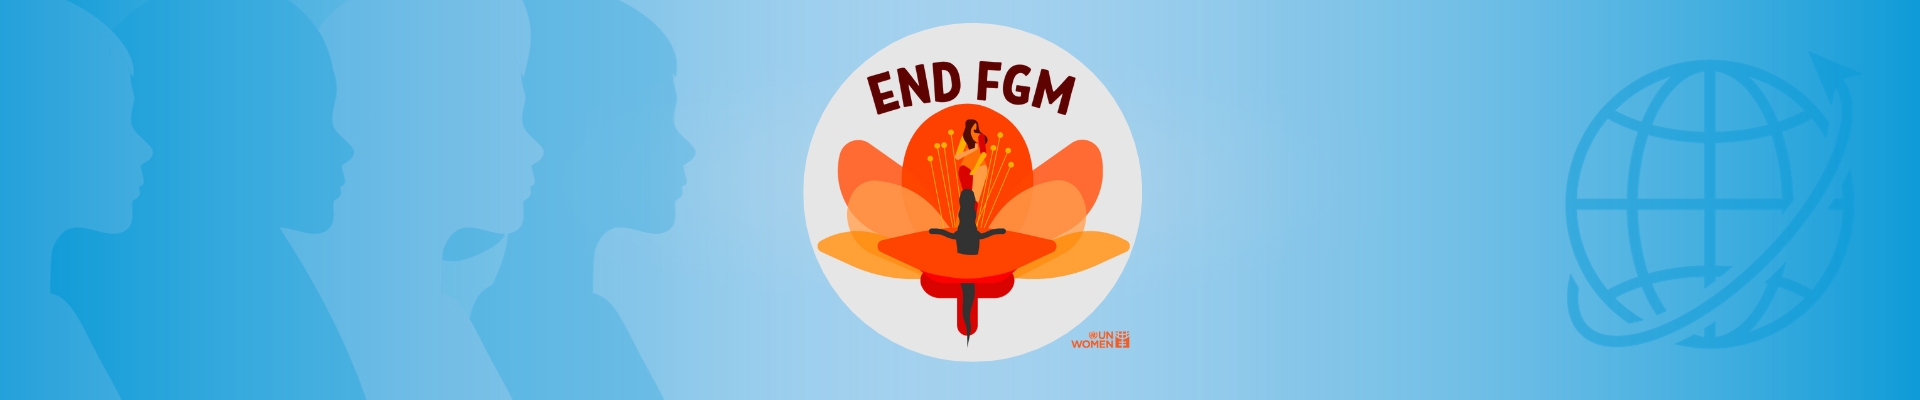 Illustration Vertrag mit Symbol - Null Toleranz gegenüber Weiblicher Genitalverstümmelung (FGM/C) - Internationale Vereinbarungen - UN Women Deutschland